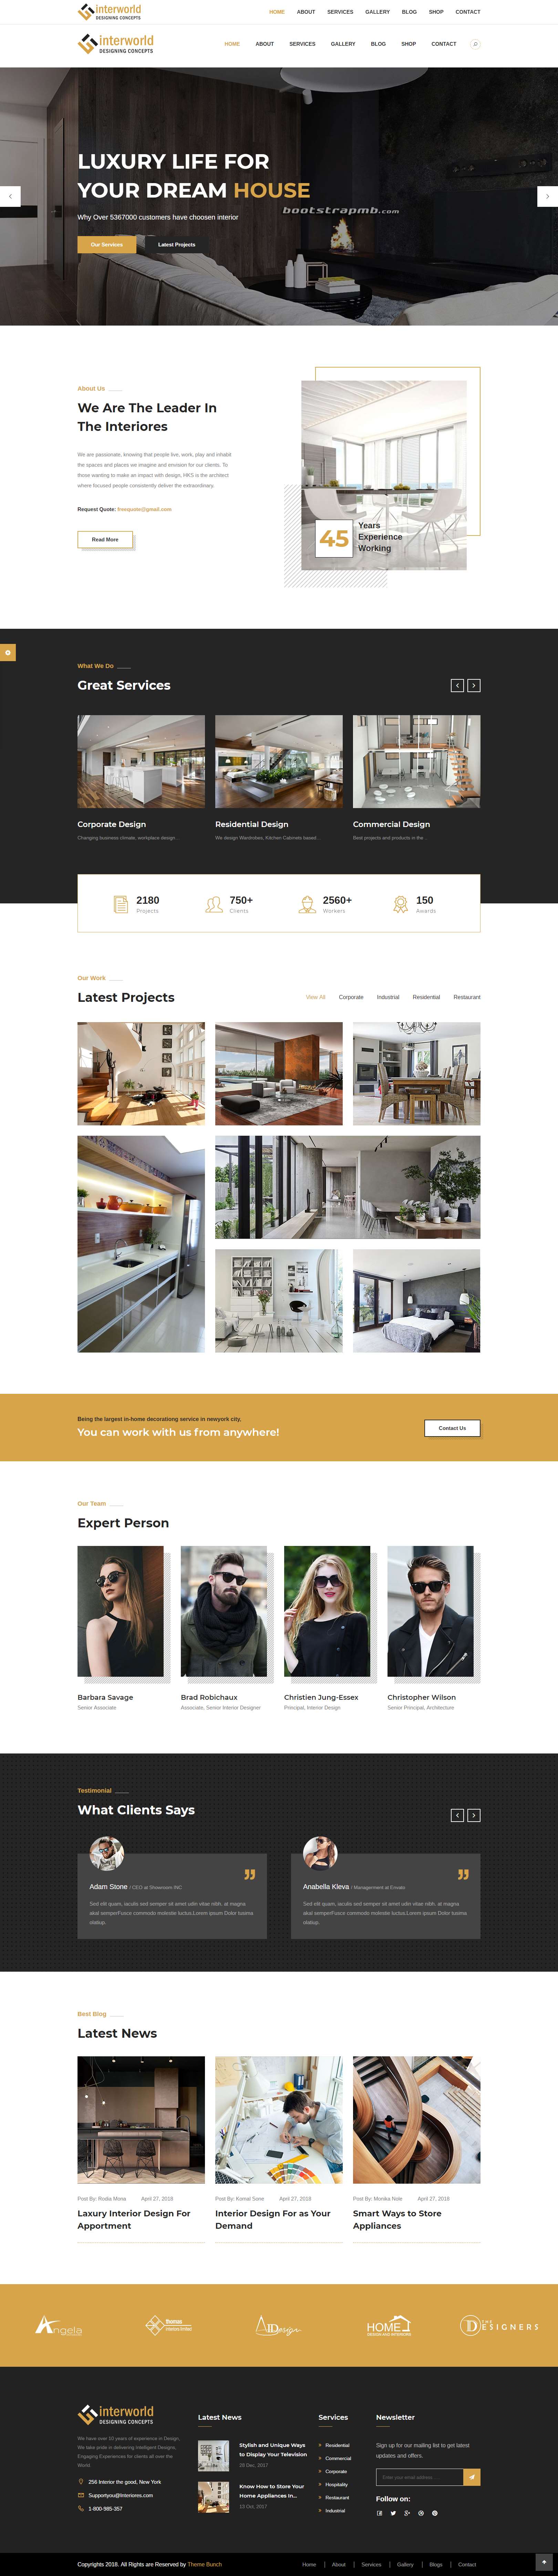 黄色欧美风格的室内装修设计企业网站源码下载